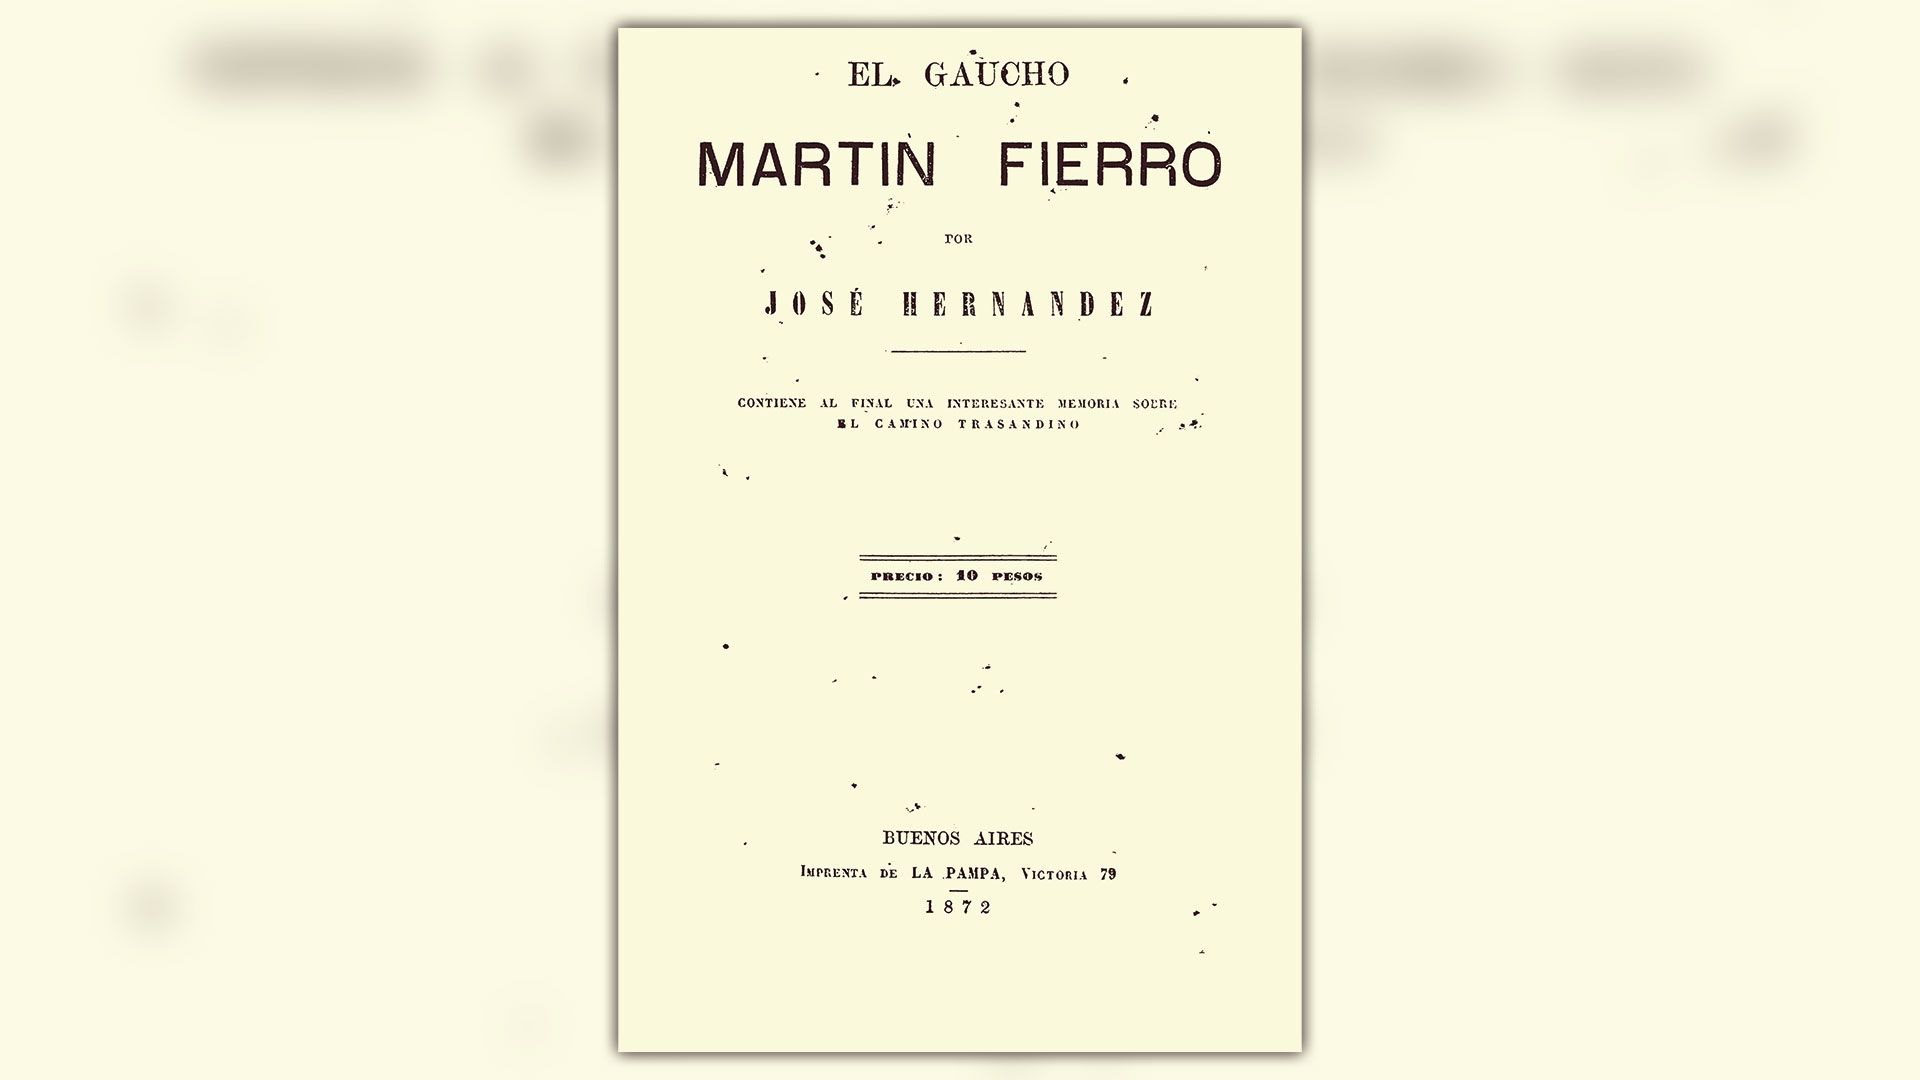 Portada de la primera edición de "Martín Fierro", de José Hernández